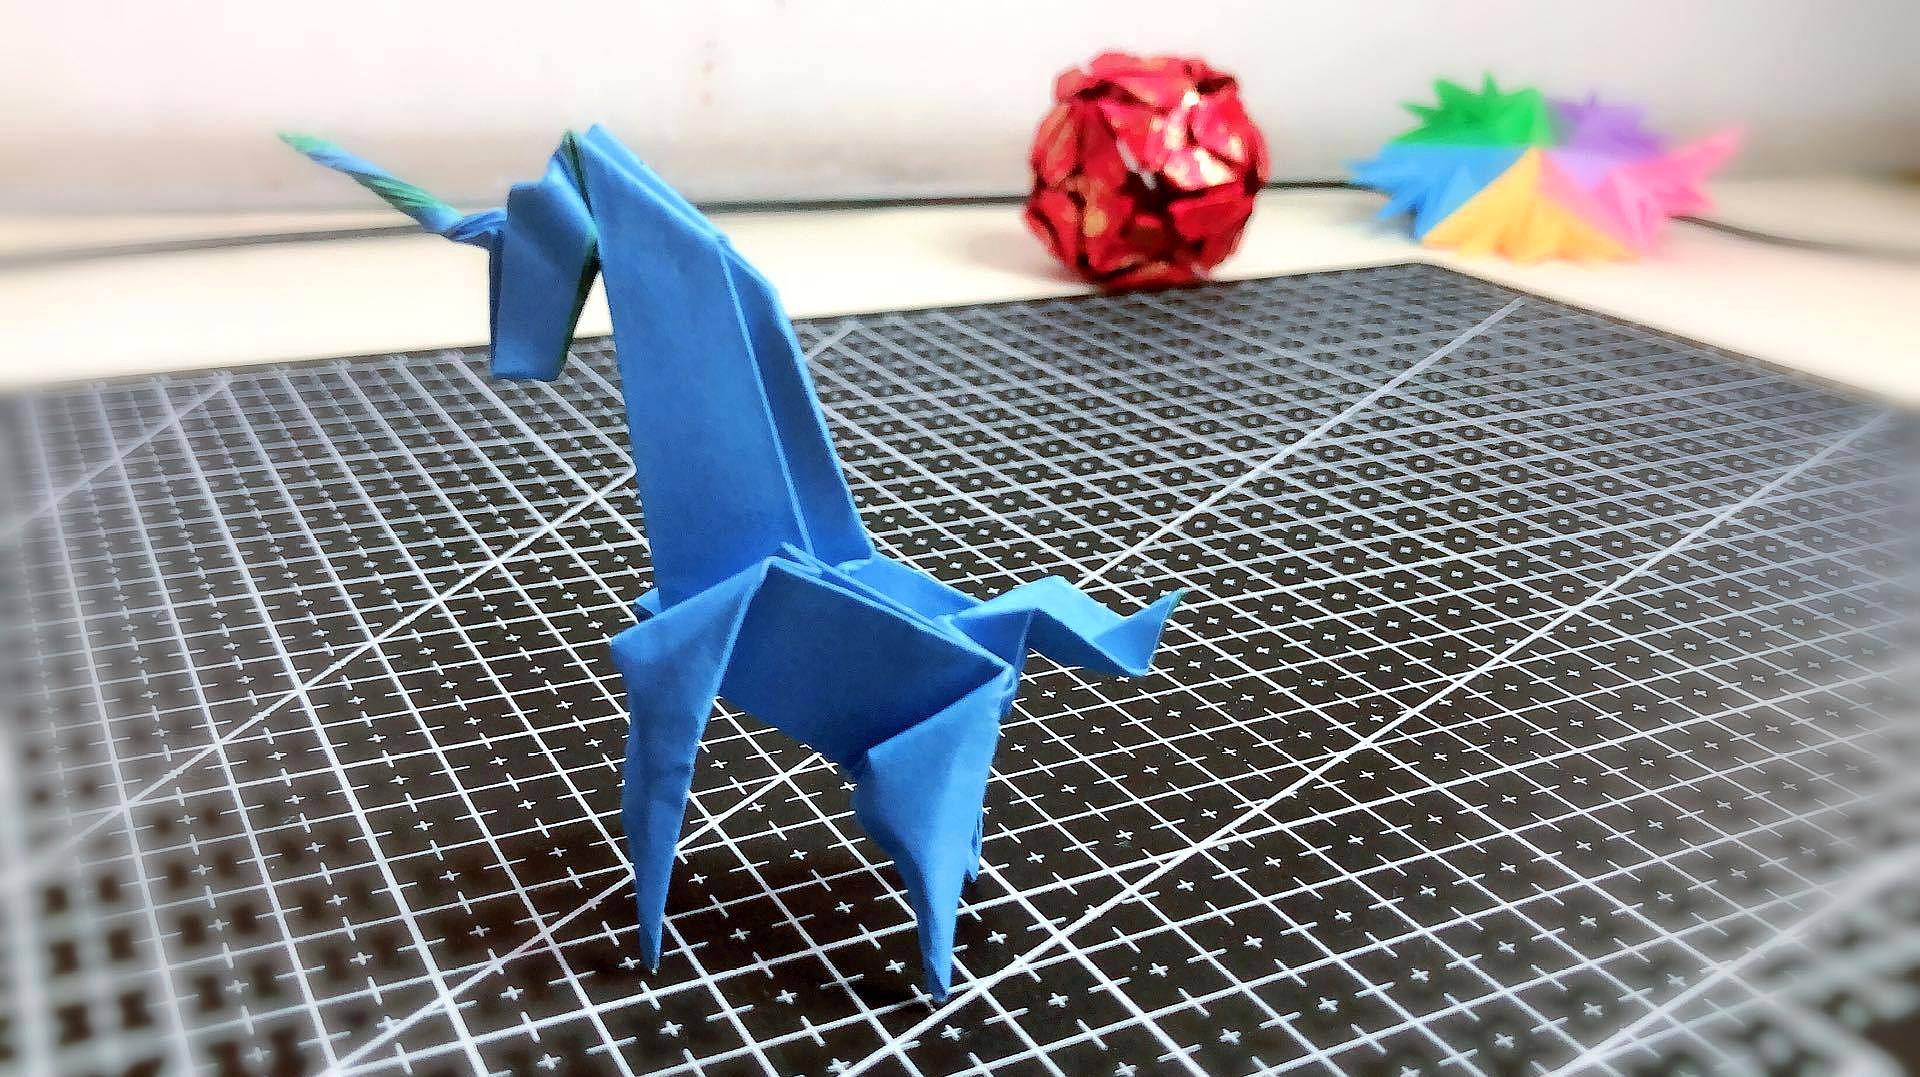 手工折纸:独角兽的折纸教程,看看像不像?